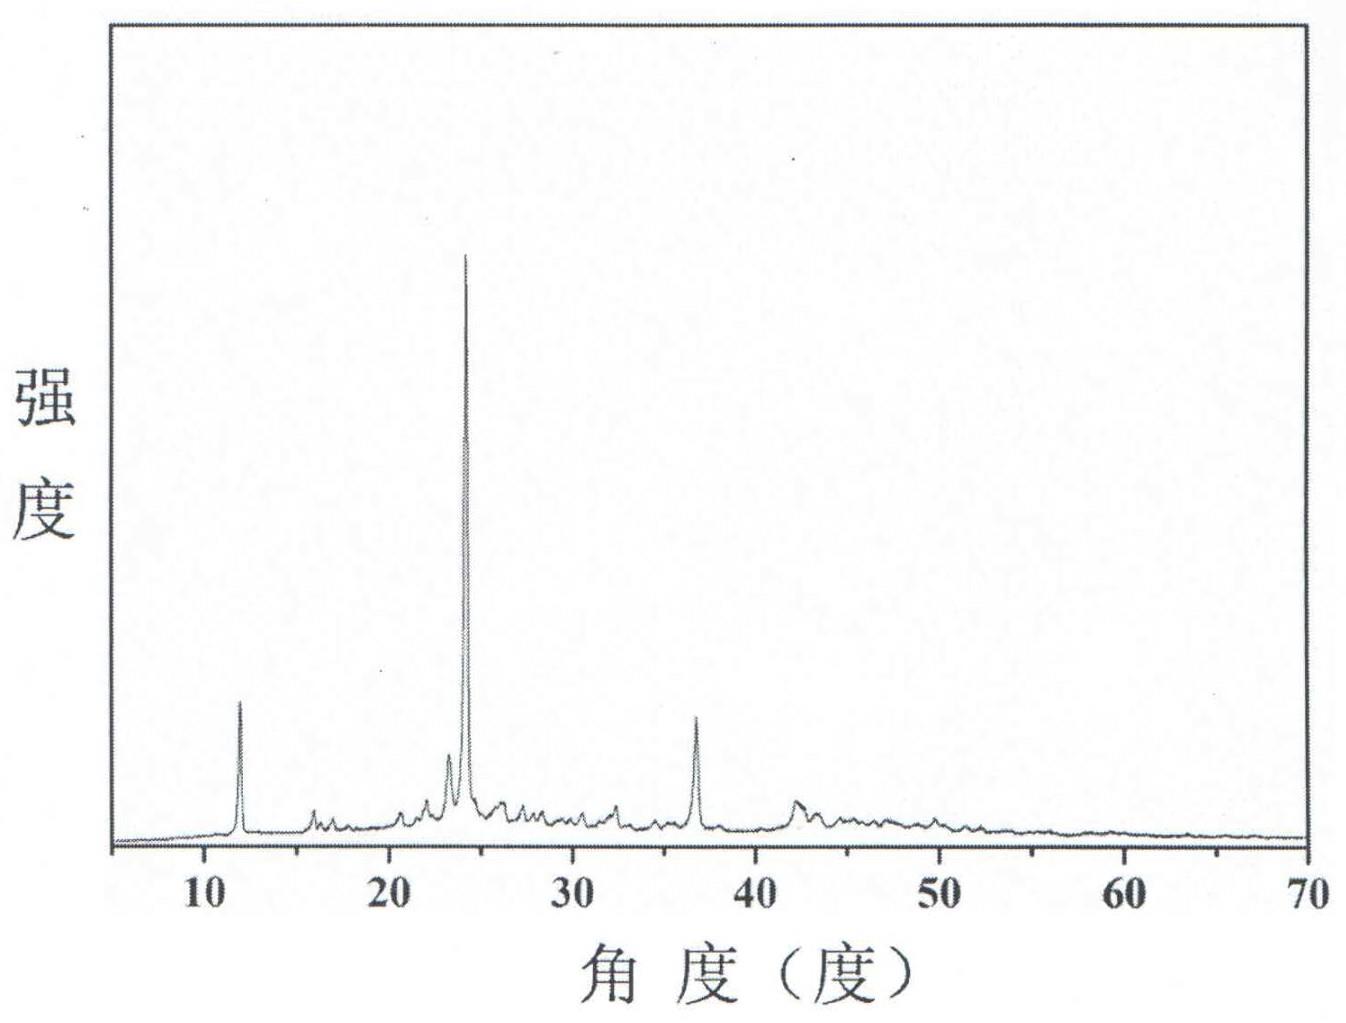 化合物氟化硼酸钠和氟化硼酸钠双折射晶体及制备方法和用途